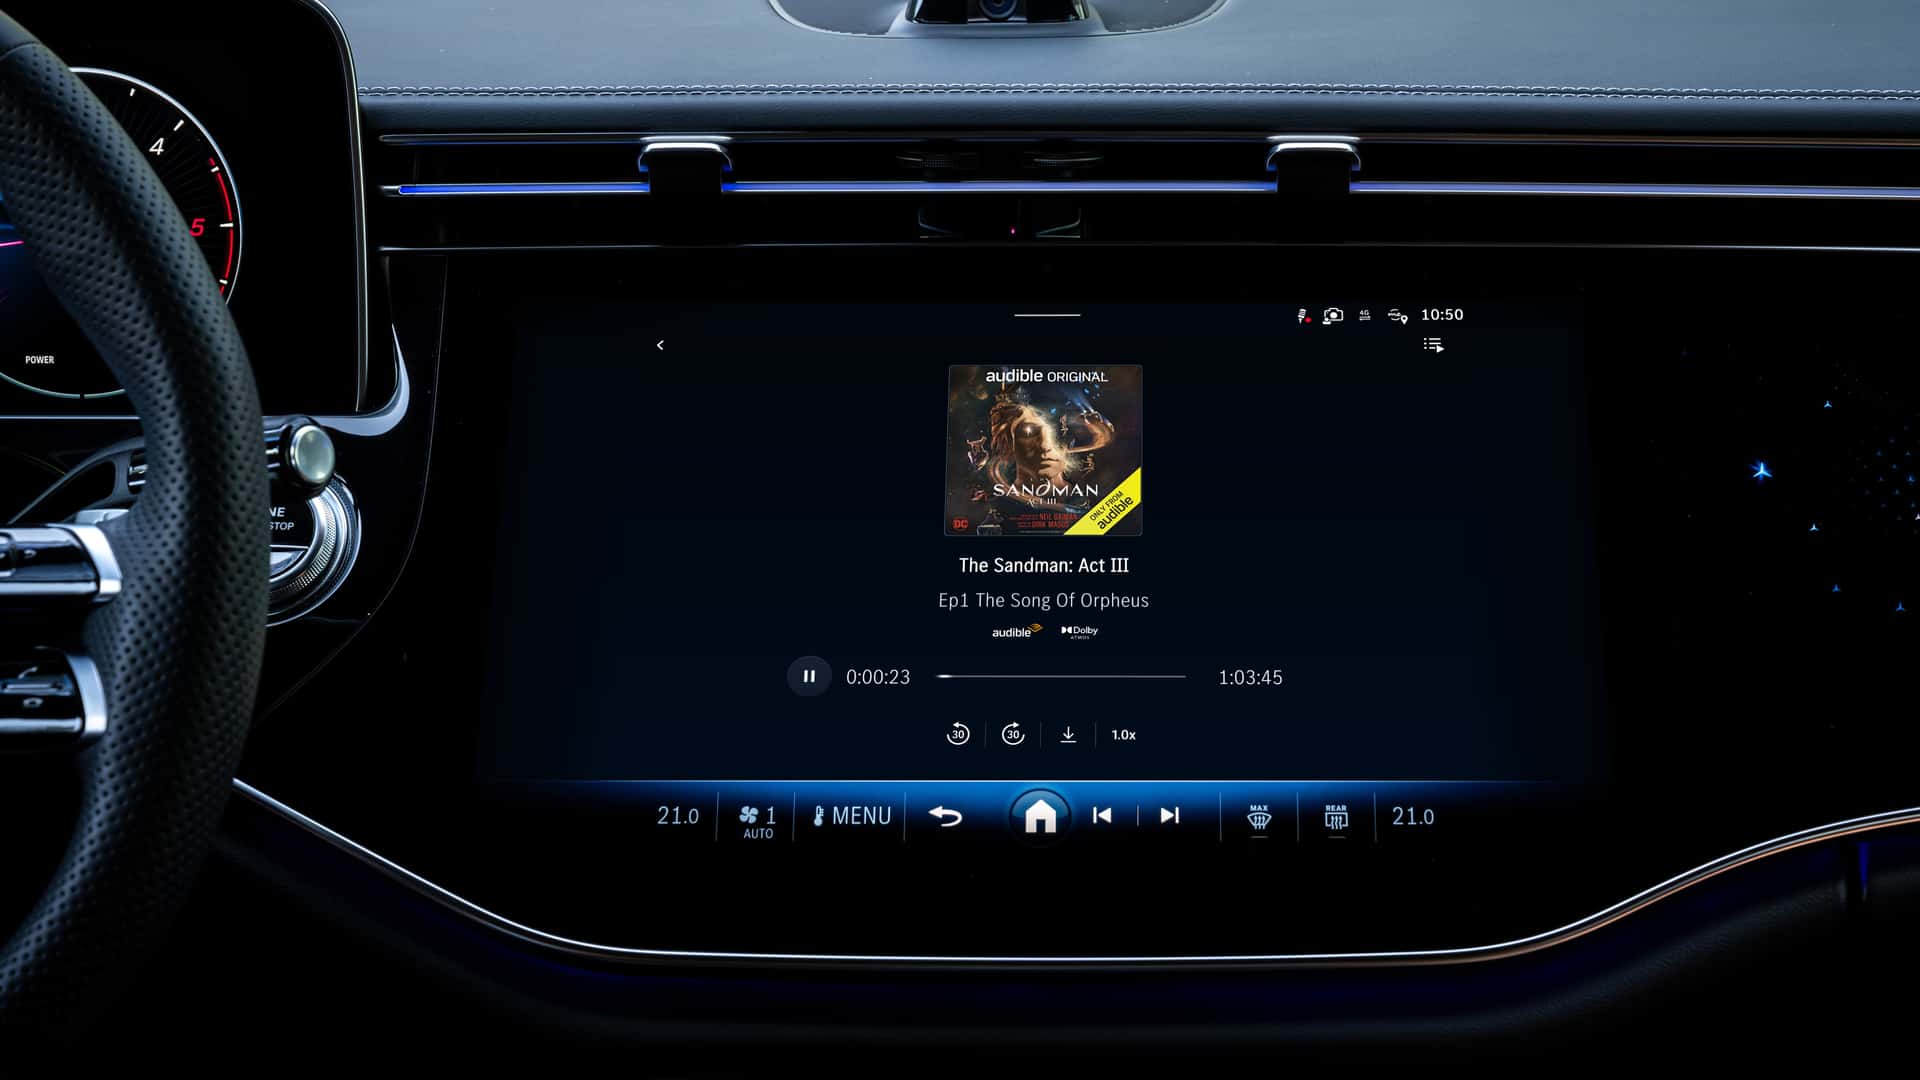 مرسيدس تكشف عن الجيل الجديد من نظام التشغيل لسياراتها بتقنيات مبتكرة جديدة 5